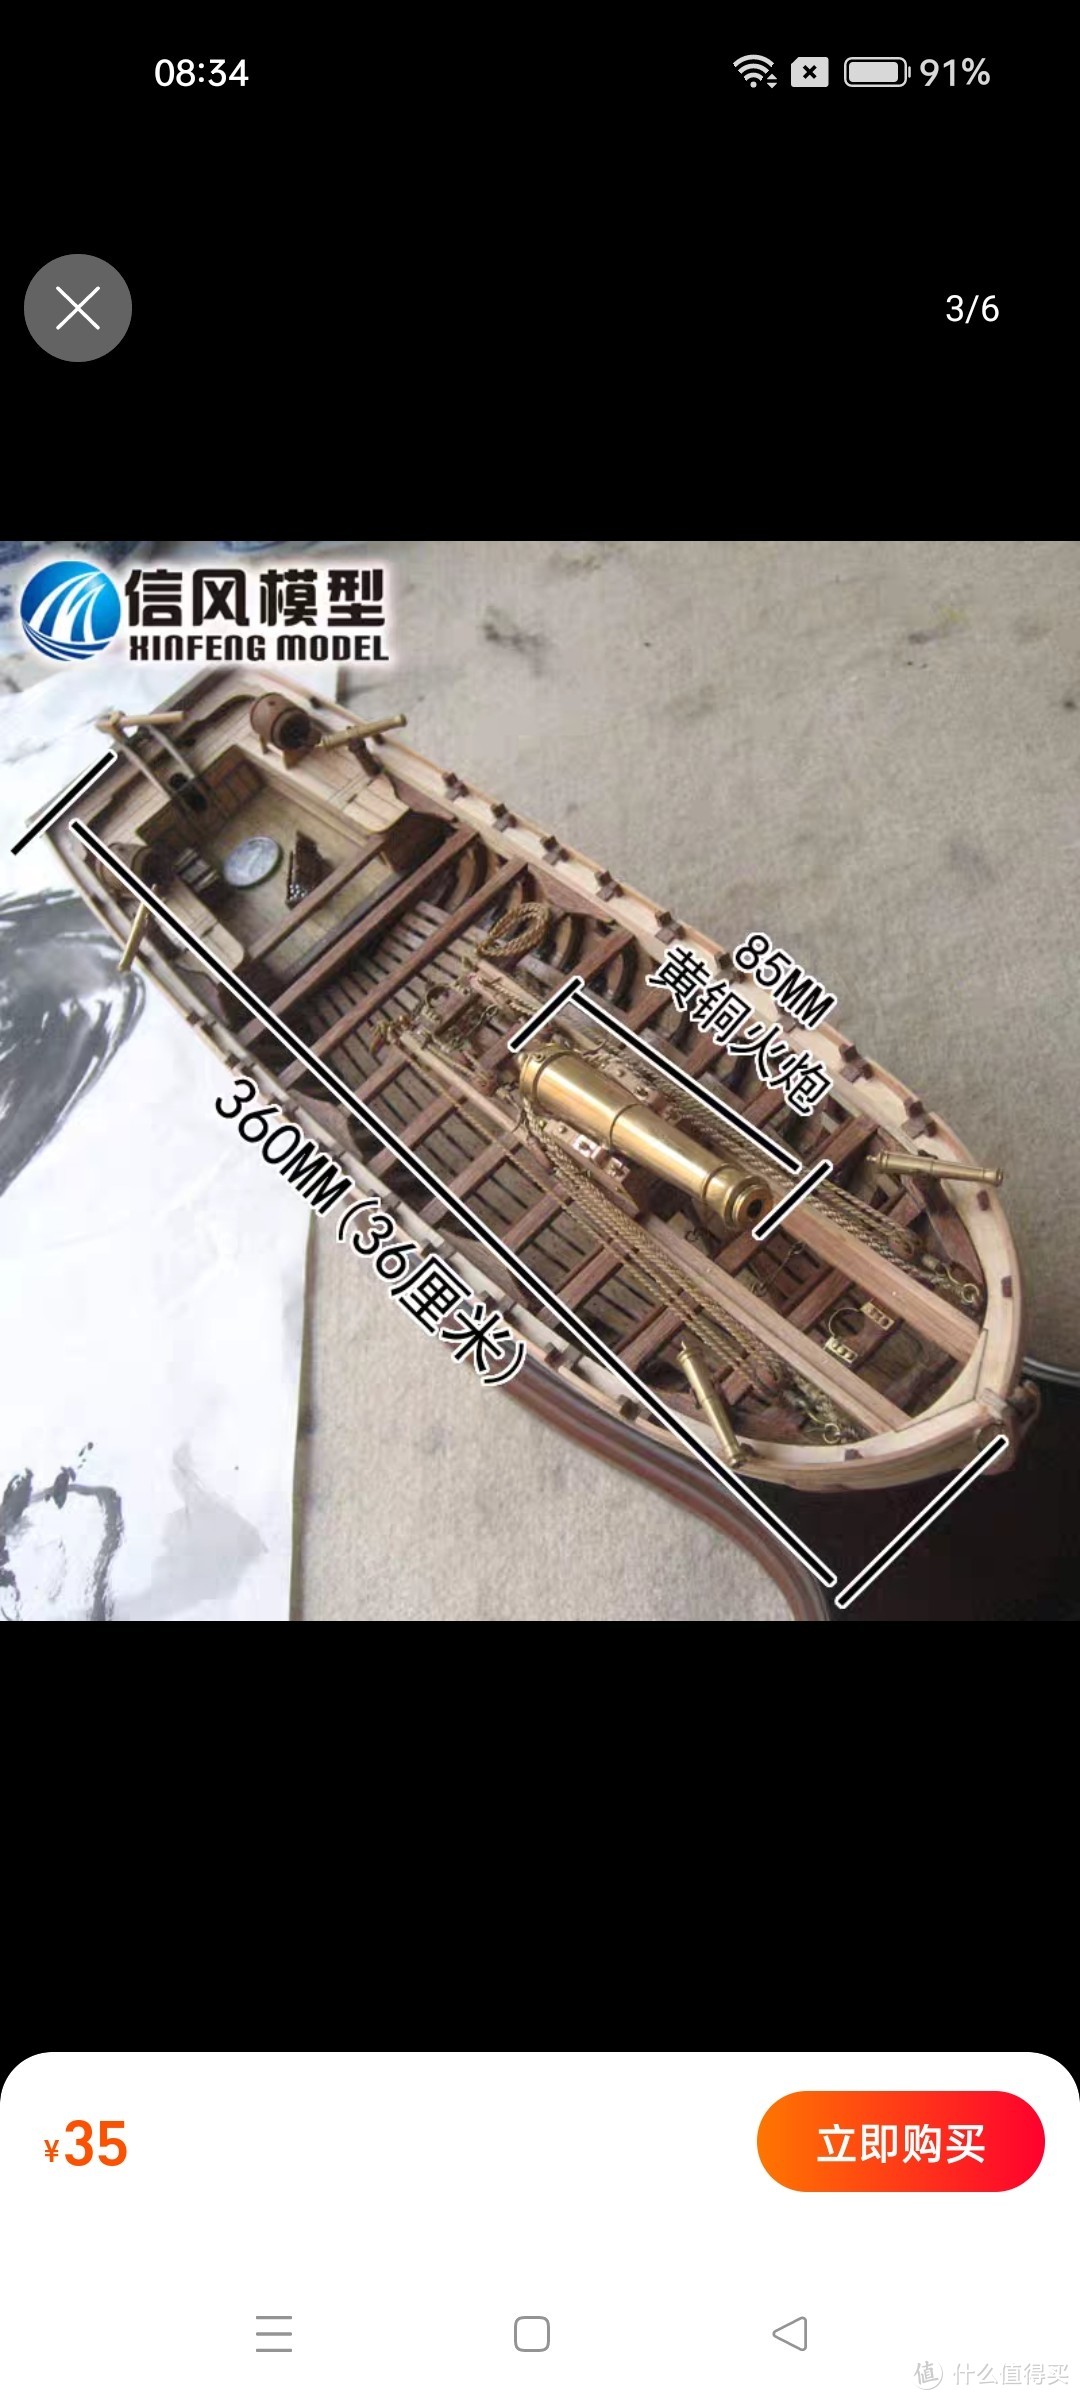 【信风模型】古典木质帆船模型拼装套材--全肋骨武装大艇(远晴)简